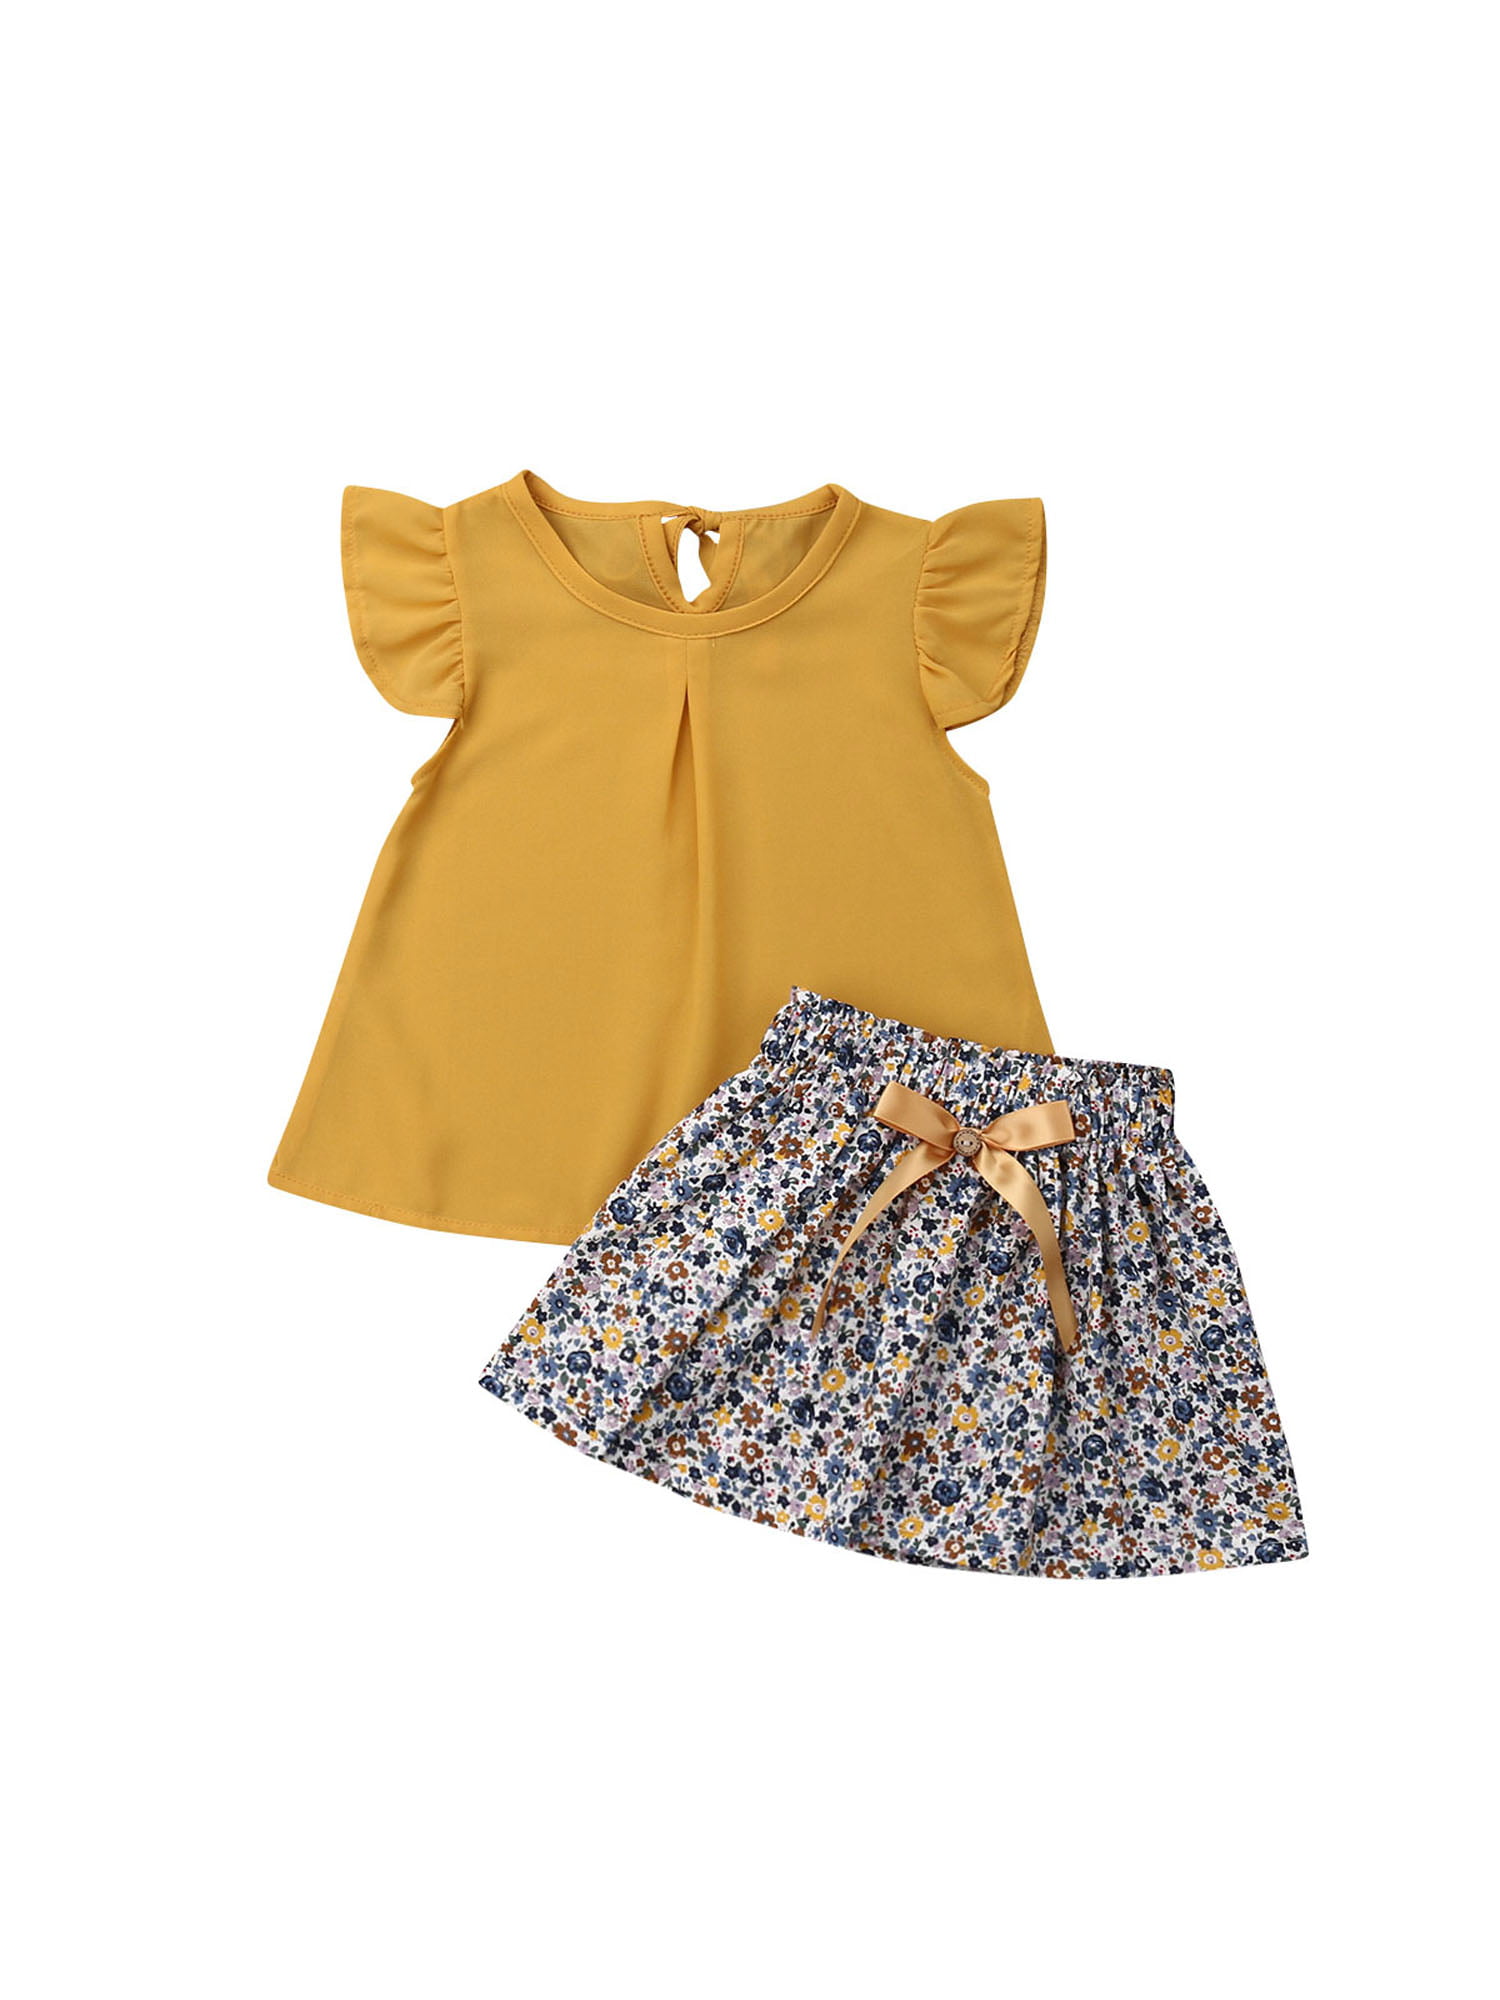 2pcs toddler Kids girls summer outfits clothes girls summer top Tee+skirt cat